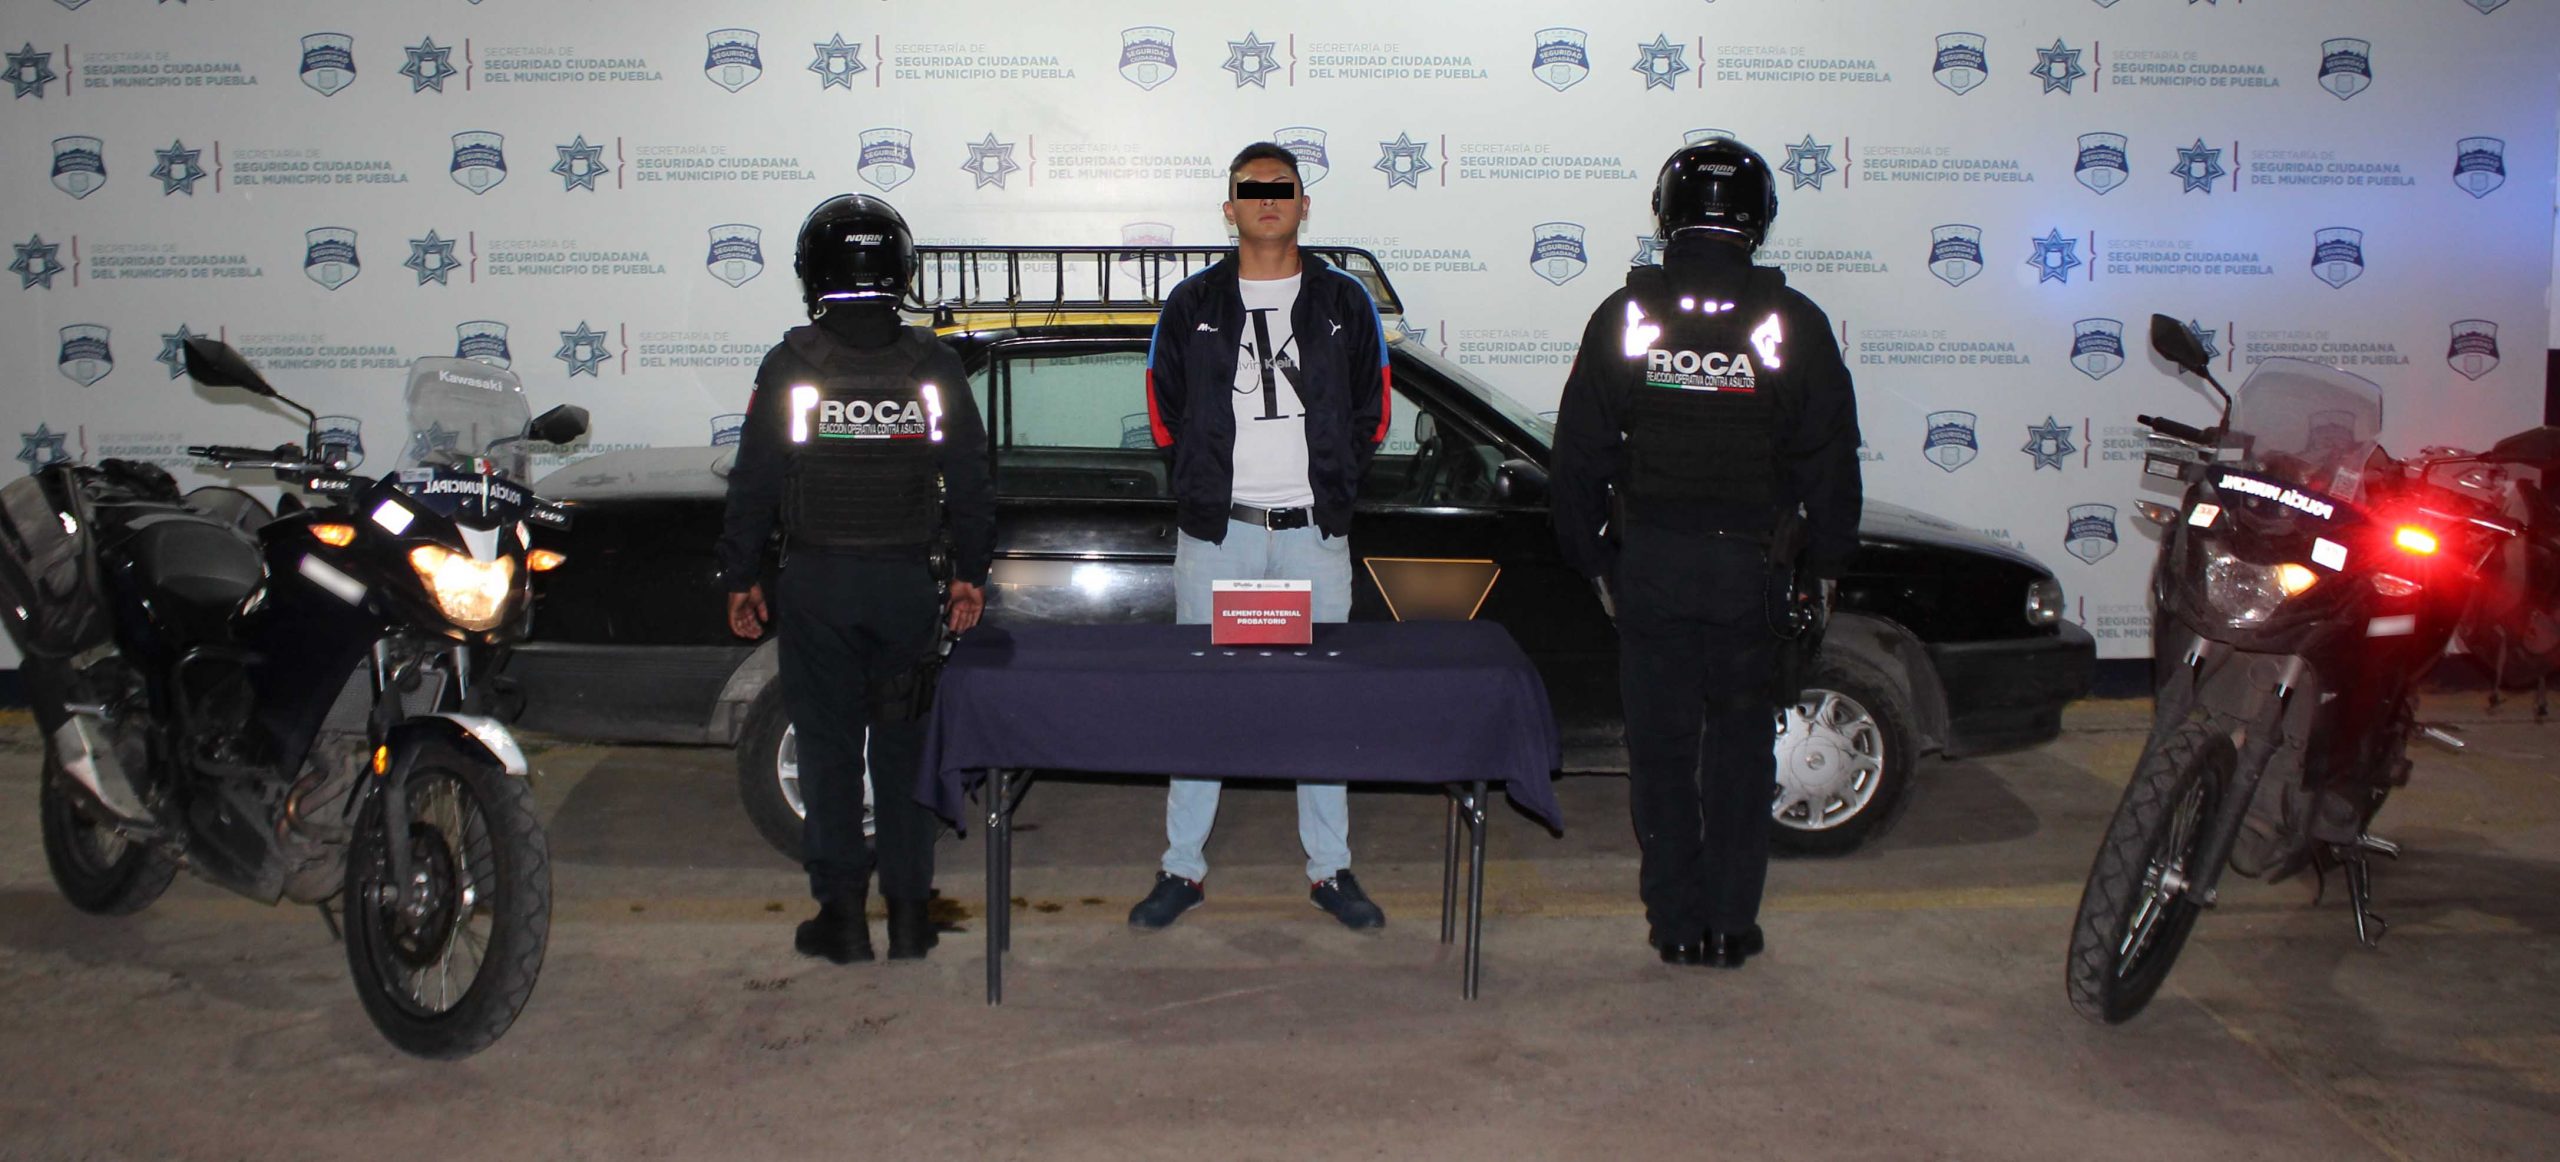 Policía municipal detuvo a probable multiasaltante identificado como “EL PACHA”